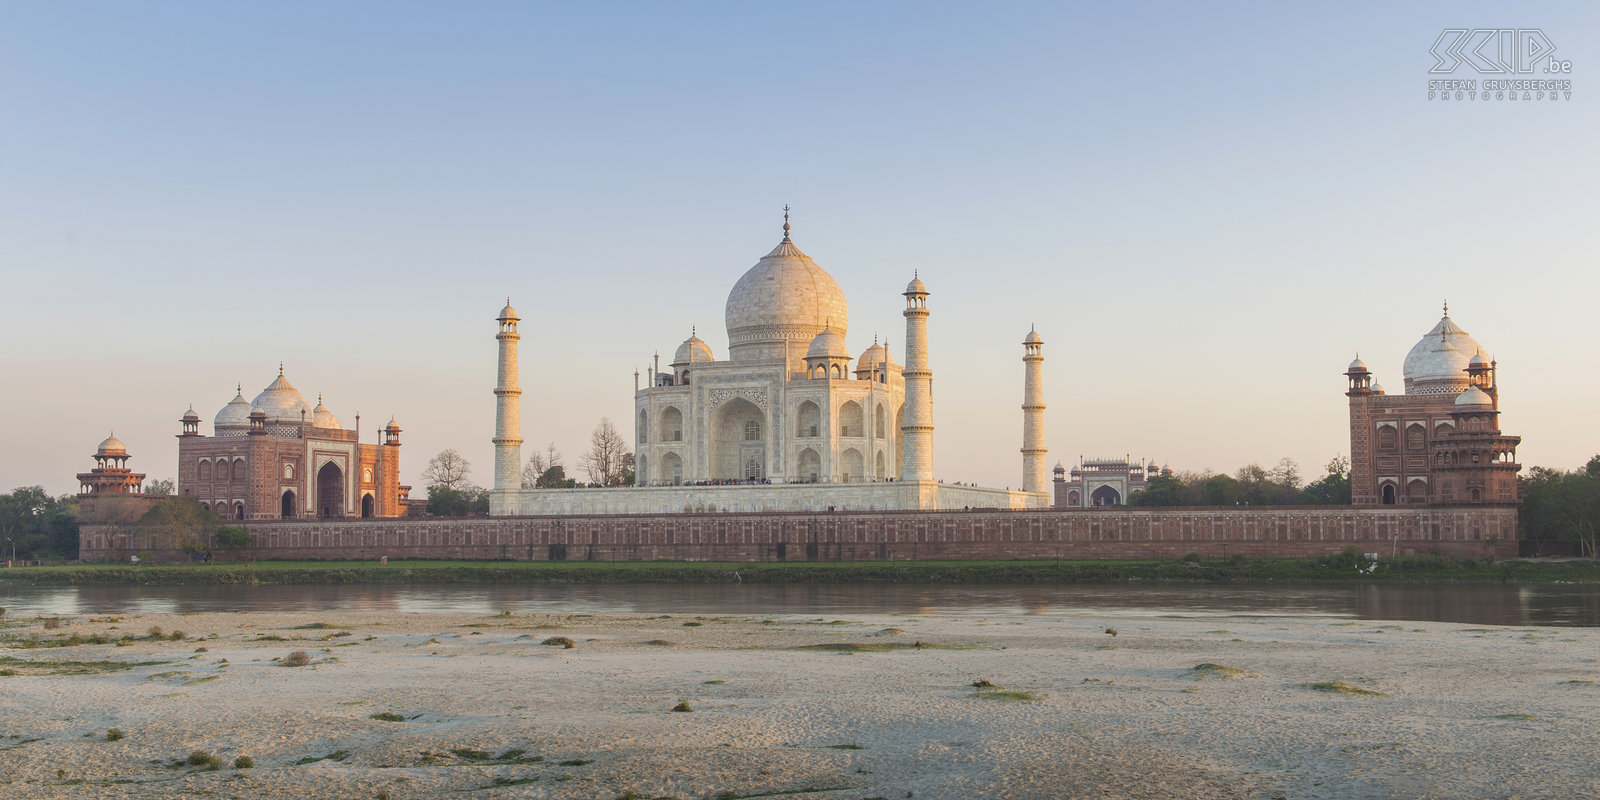 Agra - Taj Mahal Agra is wereldbekend om haar betoverende Taj Mahal. De Taj Mahal is het grafmonument dat de liefde tussen de beeldschone koningin Mumtaz en keizer Shah Jahan vereeuwigt. Het is een mausoleum dat tussen 1631 en 1648 tot stand kwam, als grafmonument voor zijn hoofdechtgenote Mumtaz Mahal, die in  het kraambed overleed.  Stefan Cruysberghs